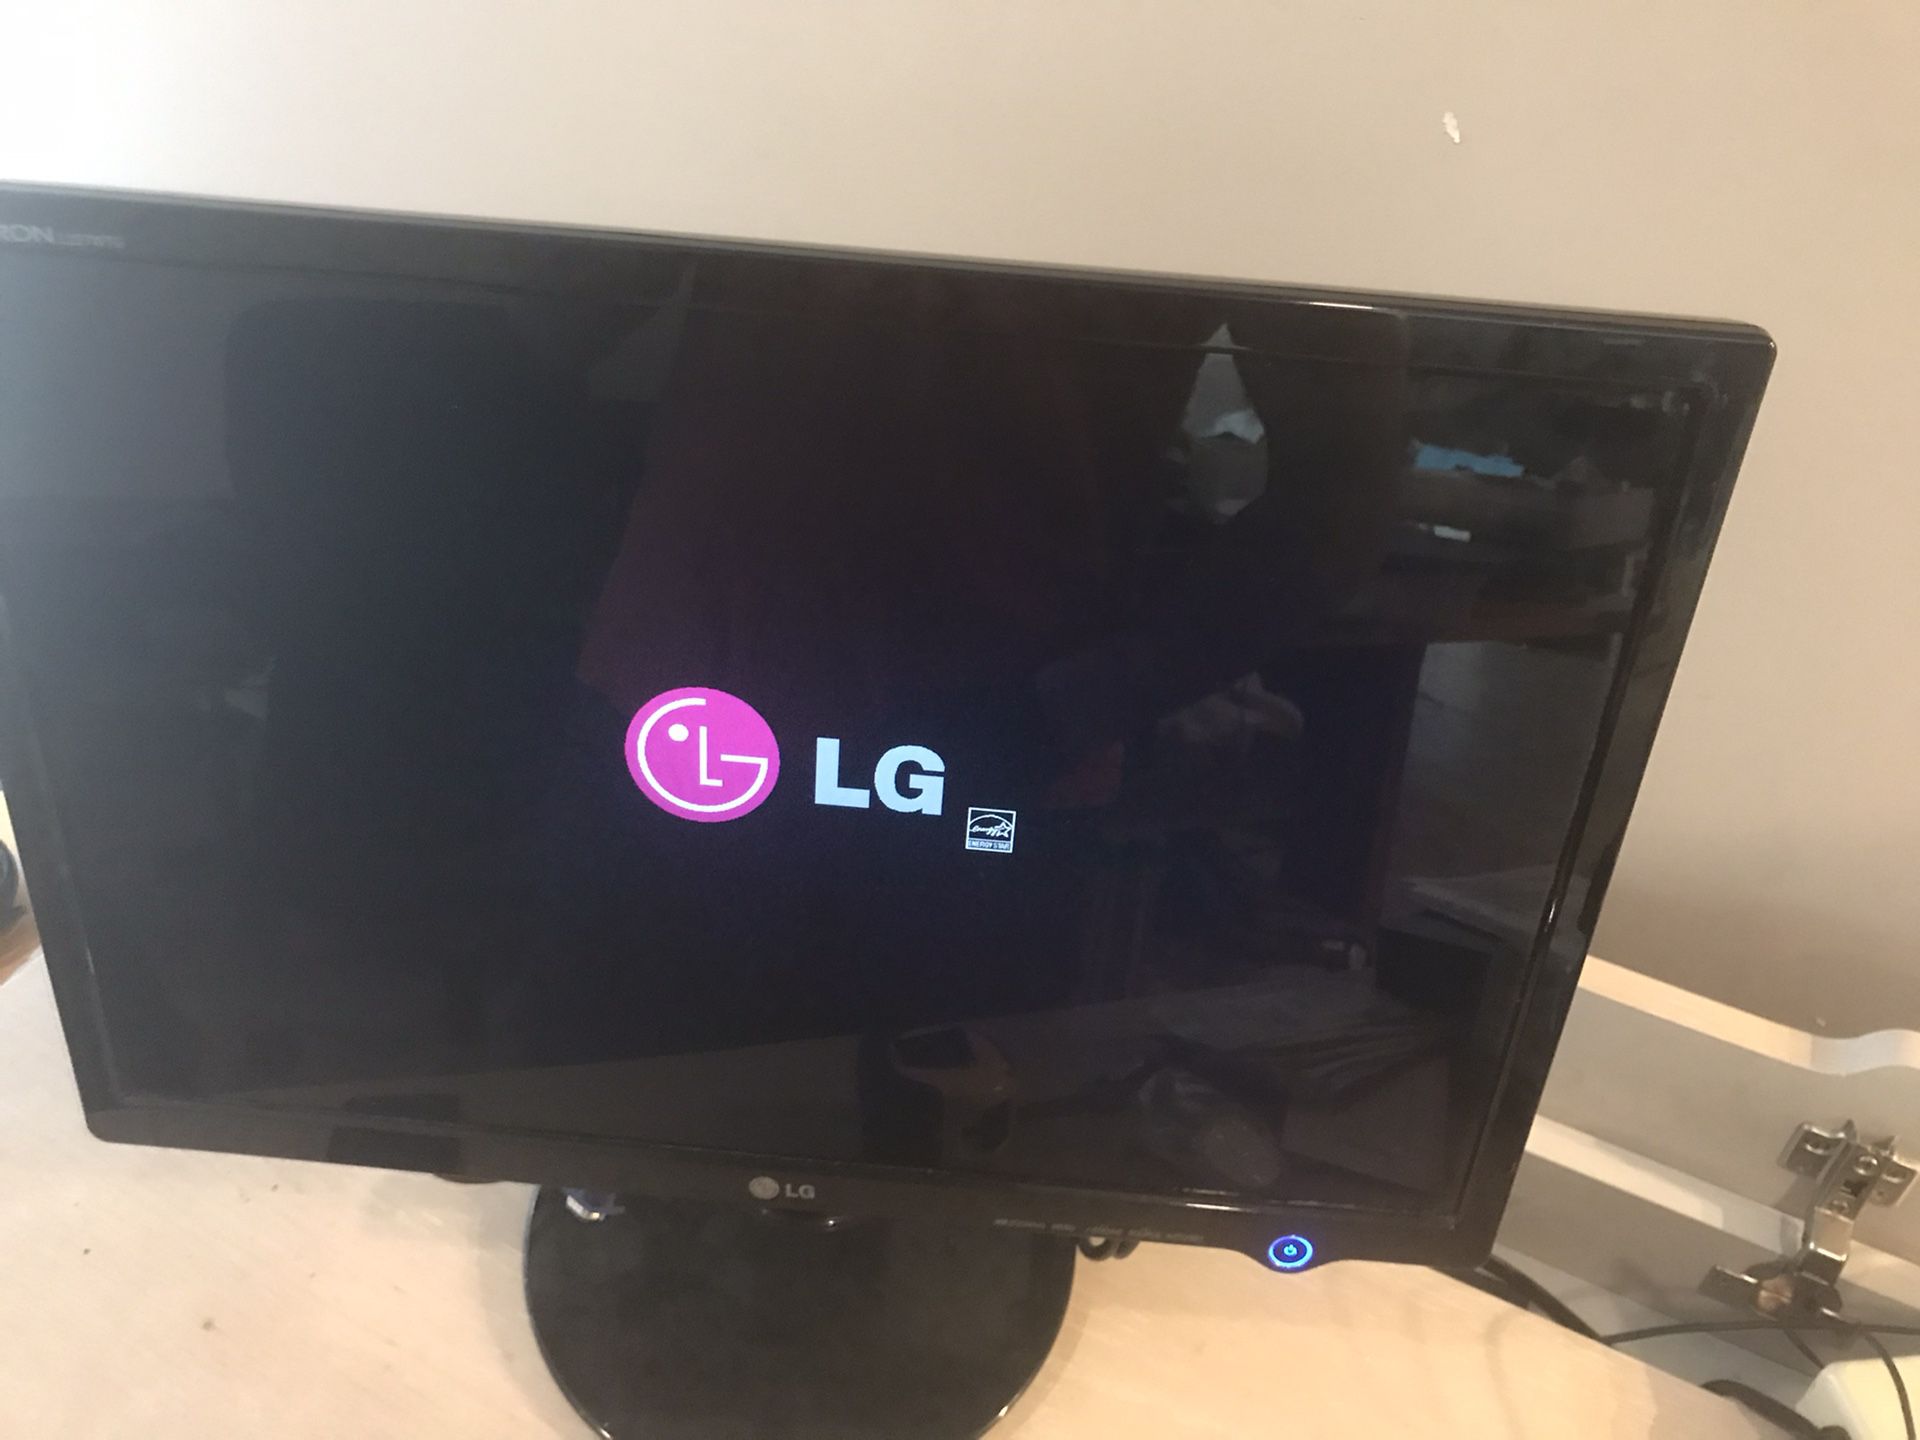 LG 22” LCD computer monitor